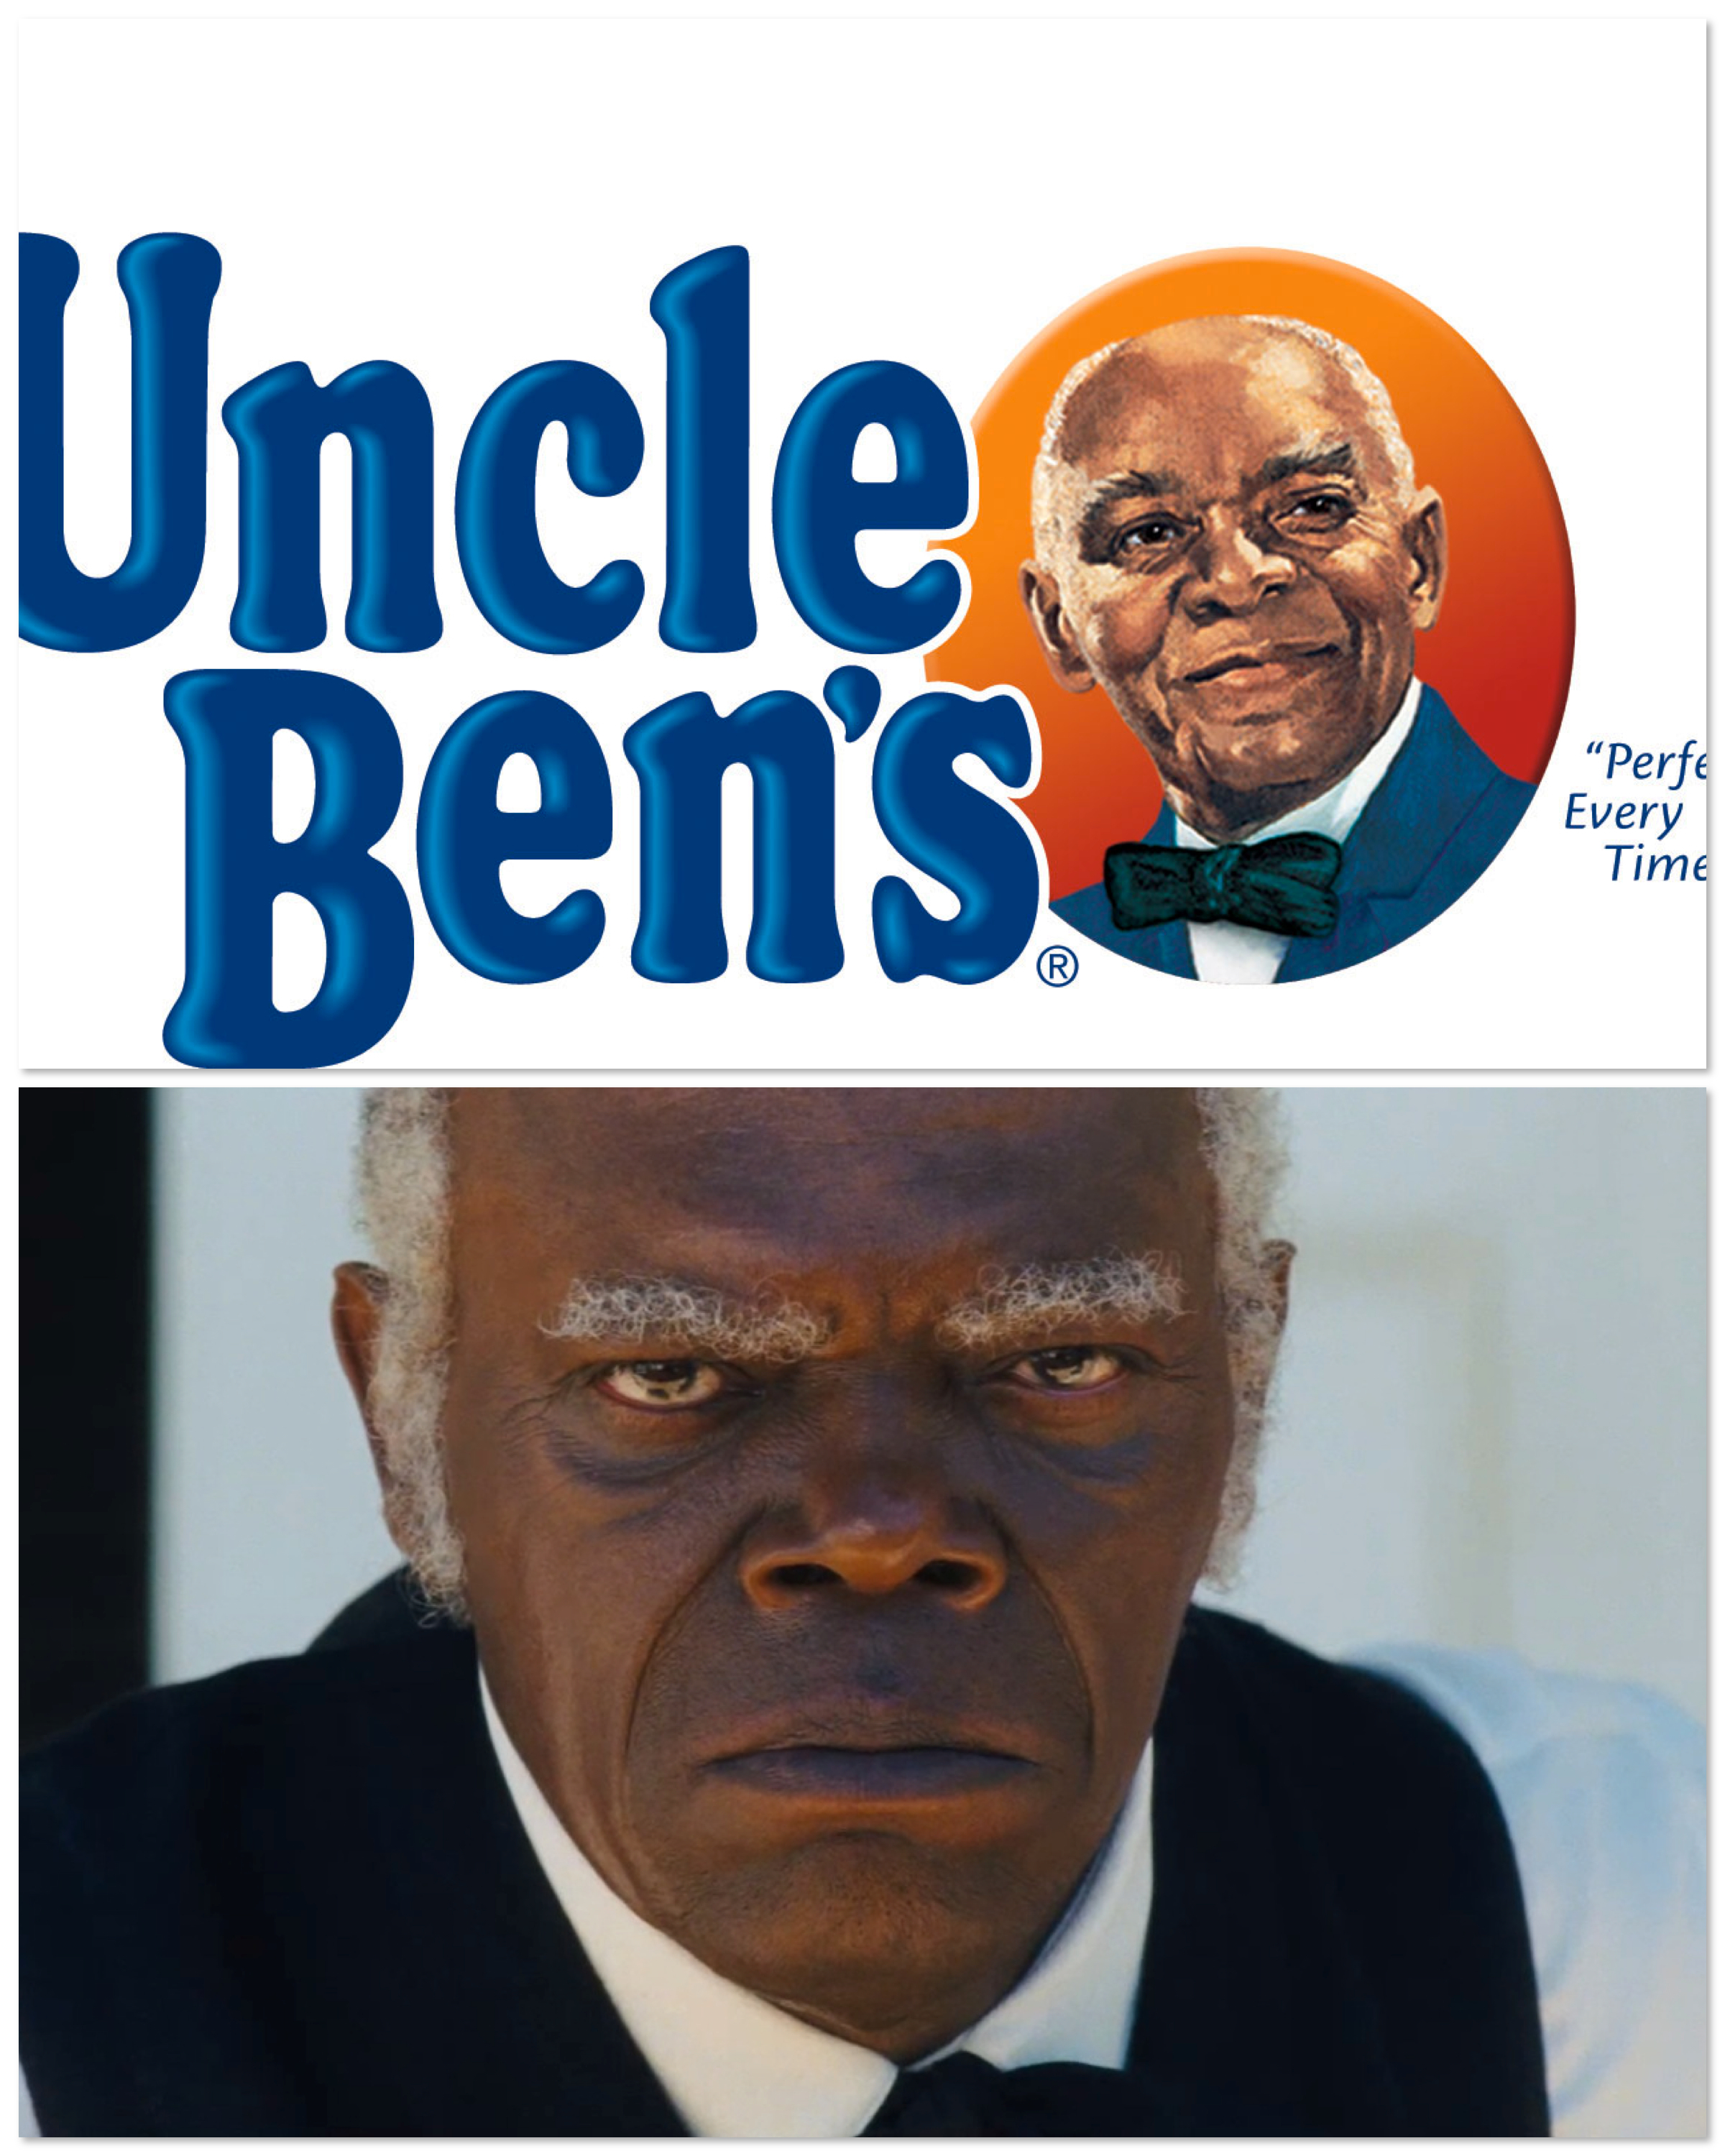 Black uncle